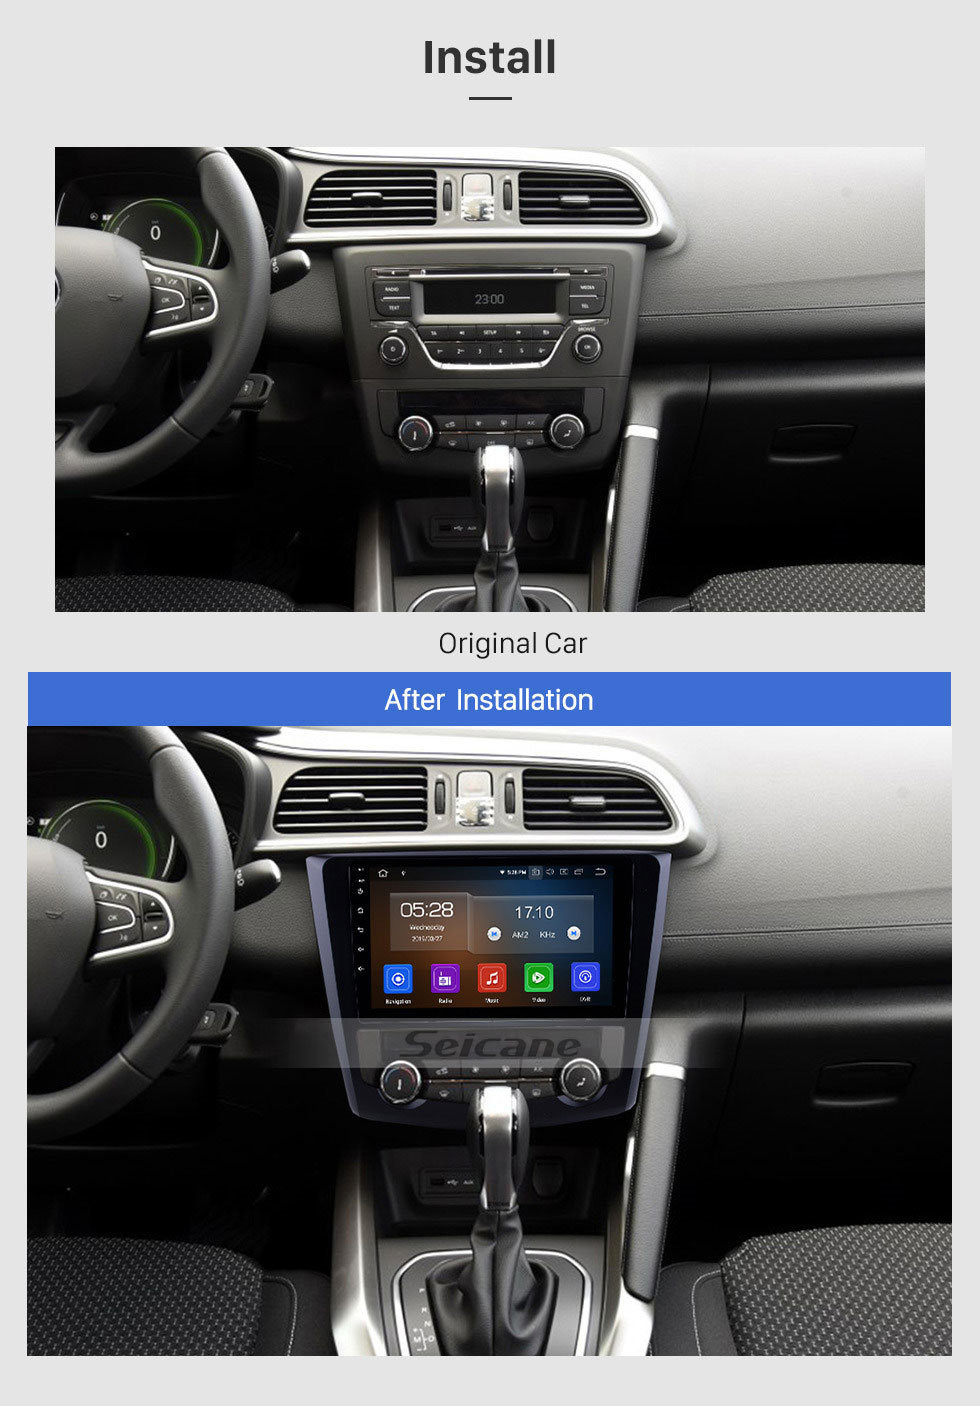 Seicane 9 polegada Android 11.0 HD Tela Sensível Ao Toque Do Carro unidade de Rádio Cabeça Estéreo para 2016-2017 Renault Kadjar Bluetooth Rádio WI-FI DVR Vídeo USB espelho link OBD2 Retrovisor câmera controle de volante